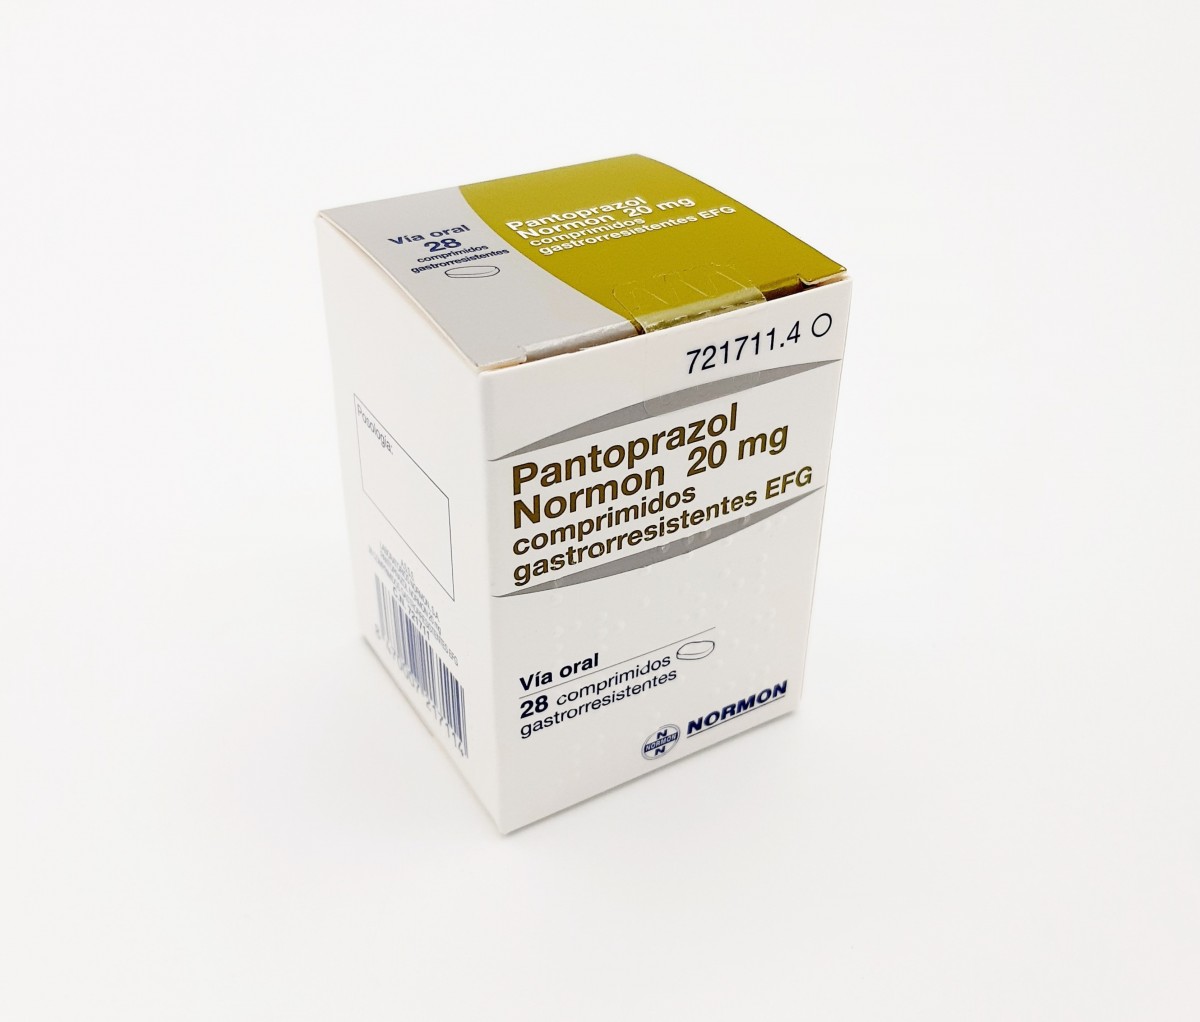 PANTOPRAZOL NORMON 20 mg COMPRIMIDOS GASTRORRESISTENTES EFG, 500 comprimidosv (Blister) fotografía del envase.